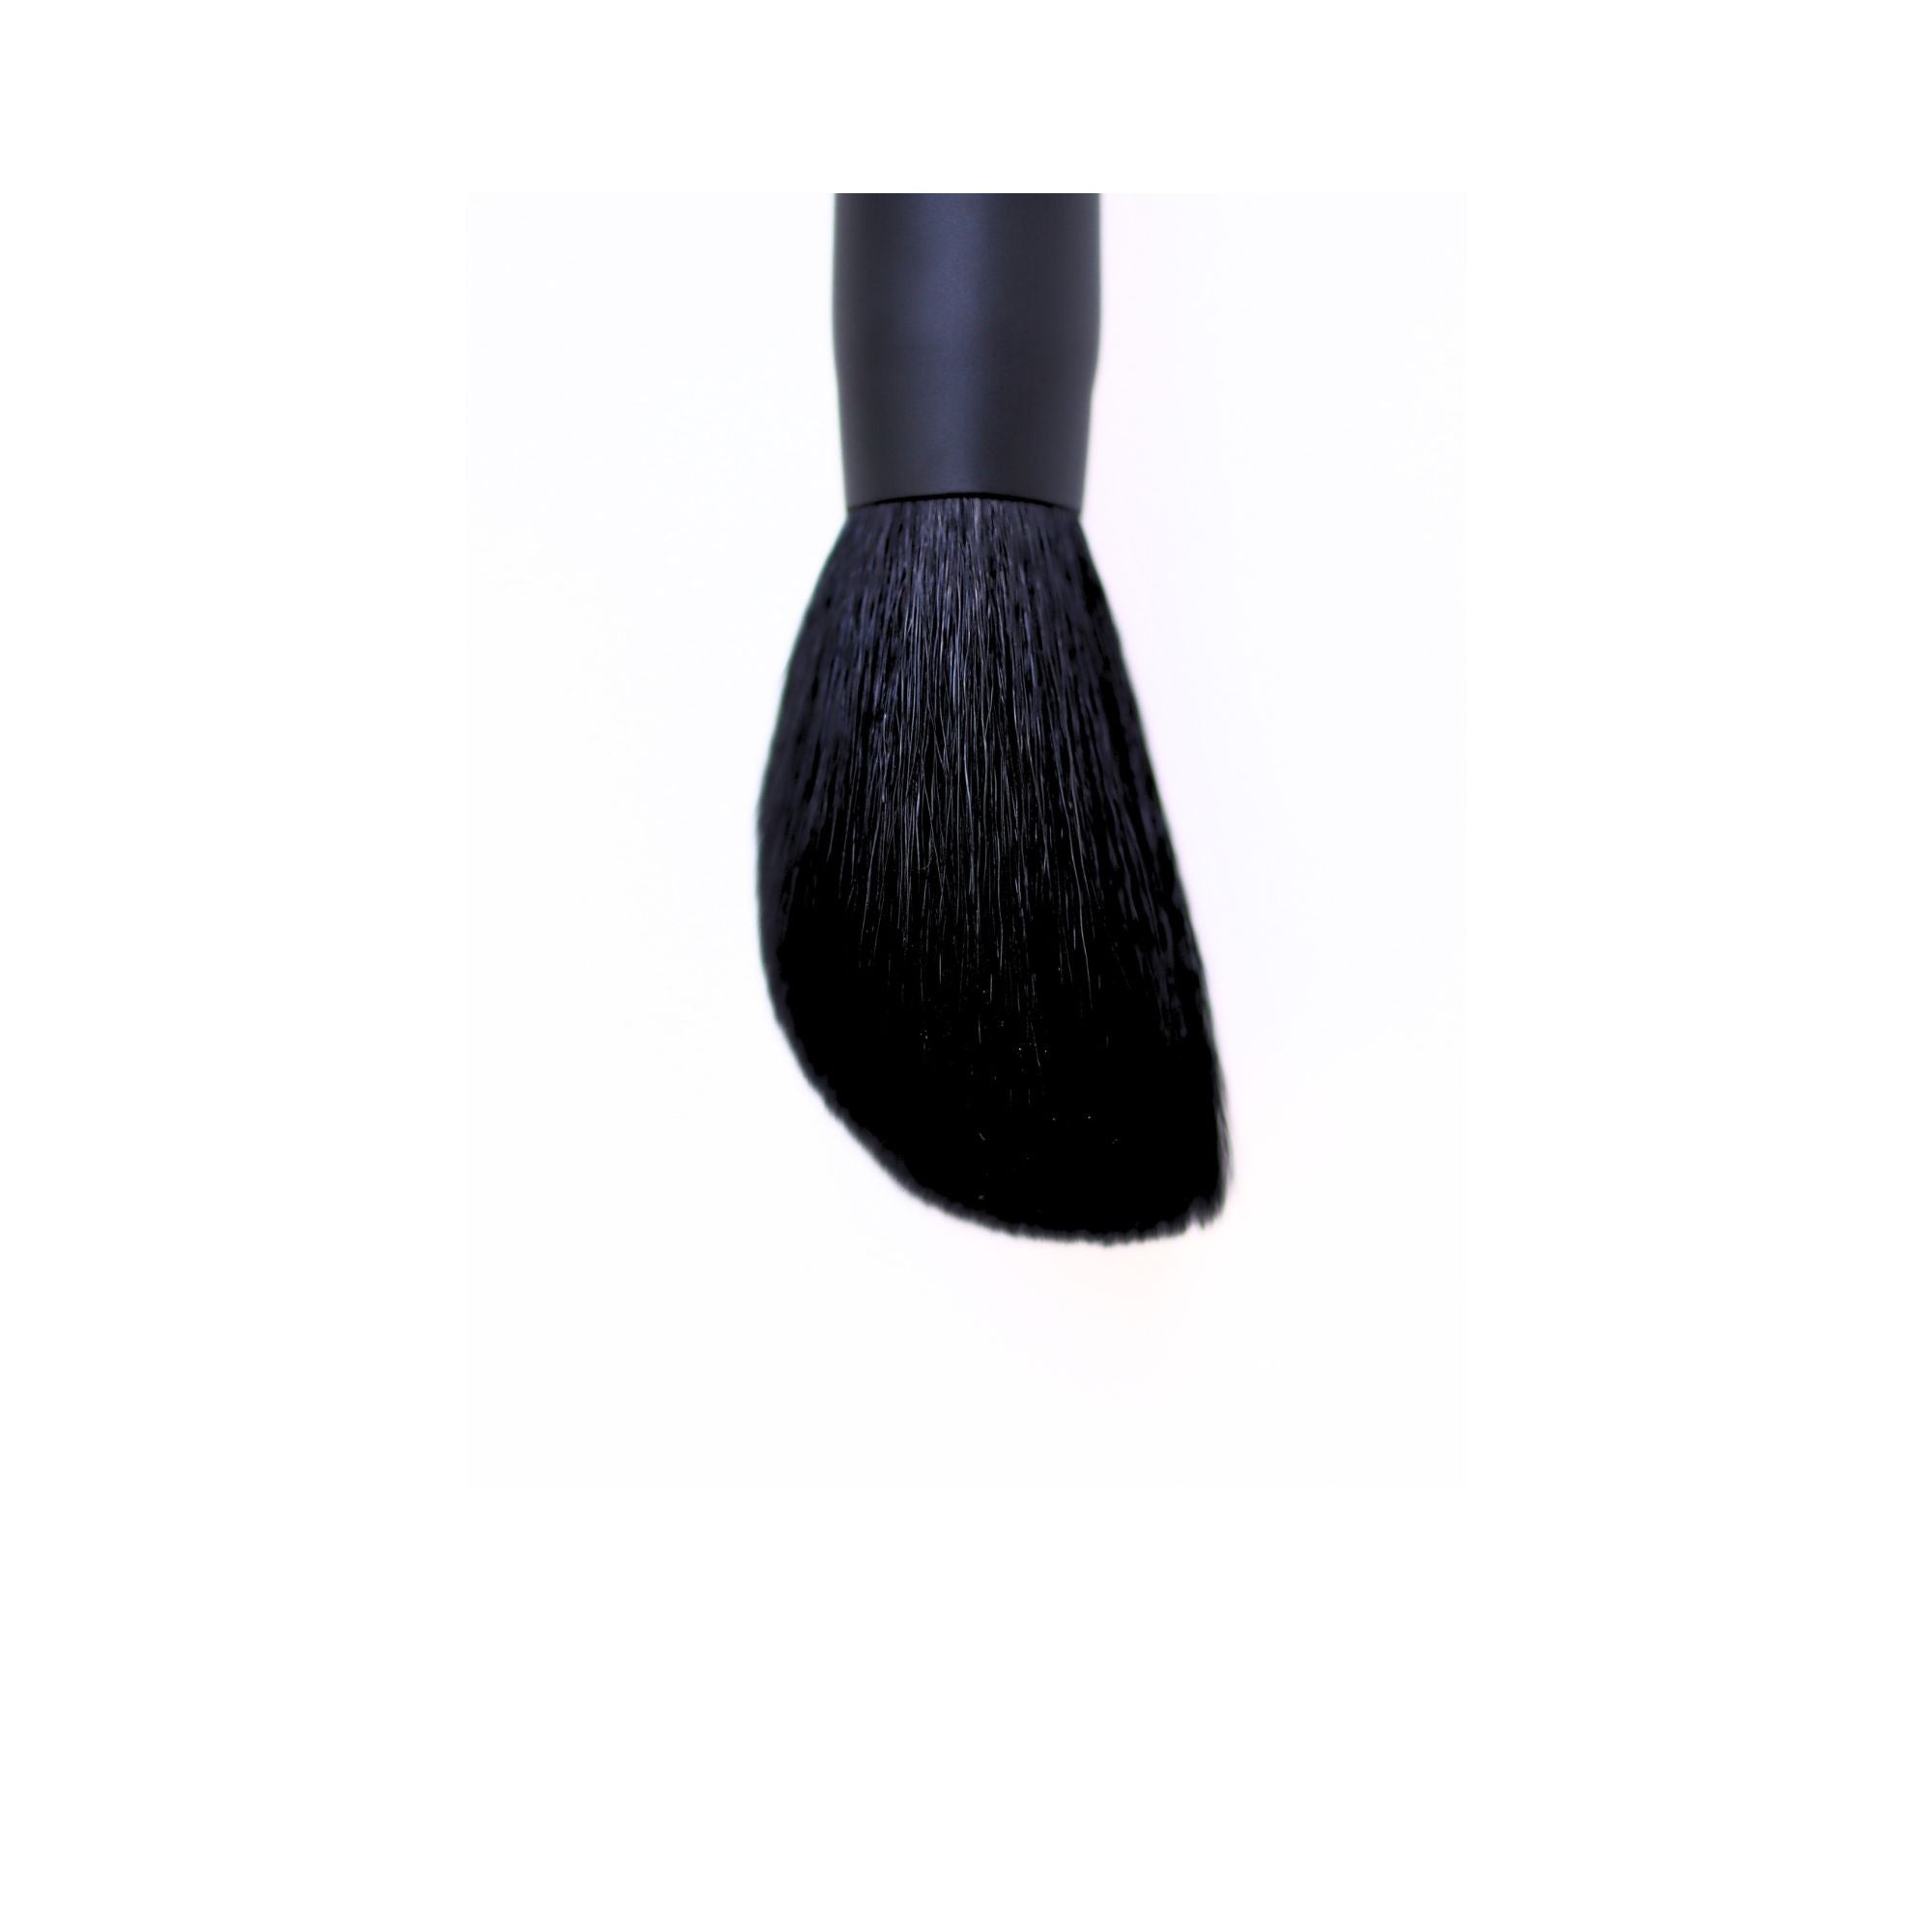 Koyudo 3D Powder Brush (2307-03) - Fude Beauty, Japanese Makeup Brushes